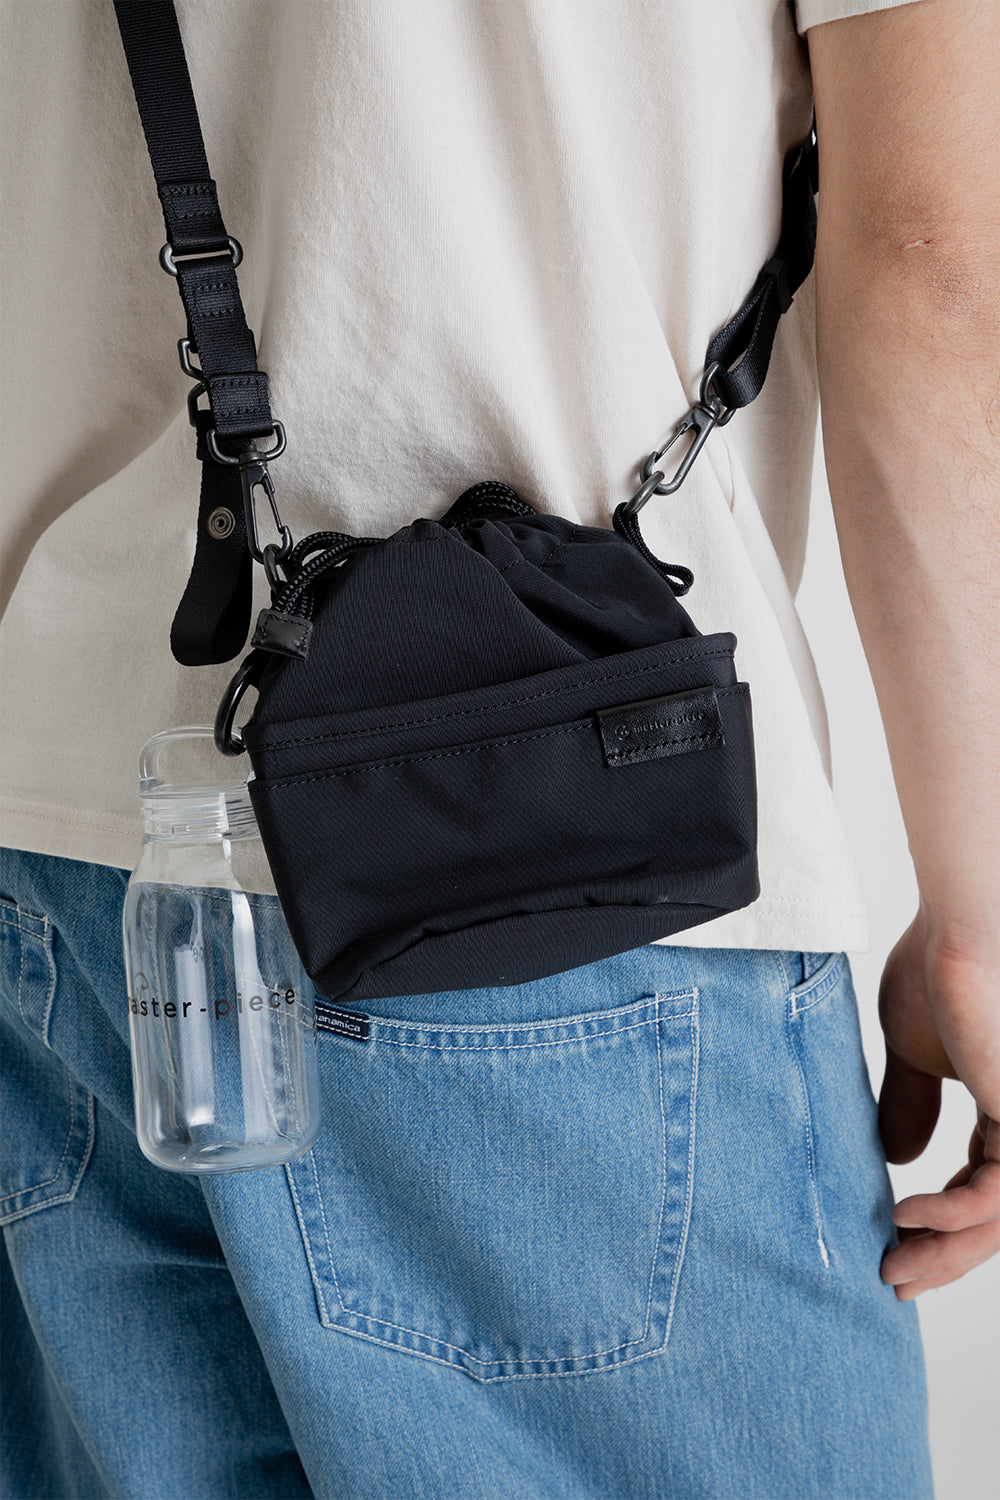 Kinto x Master-Piece Tea Bag Sa-Hou Small Shoulder Bag in Black